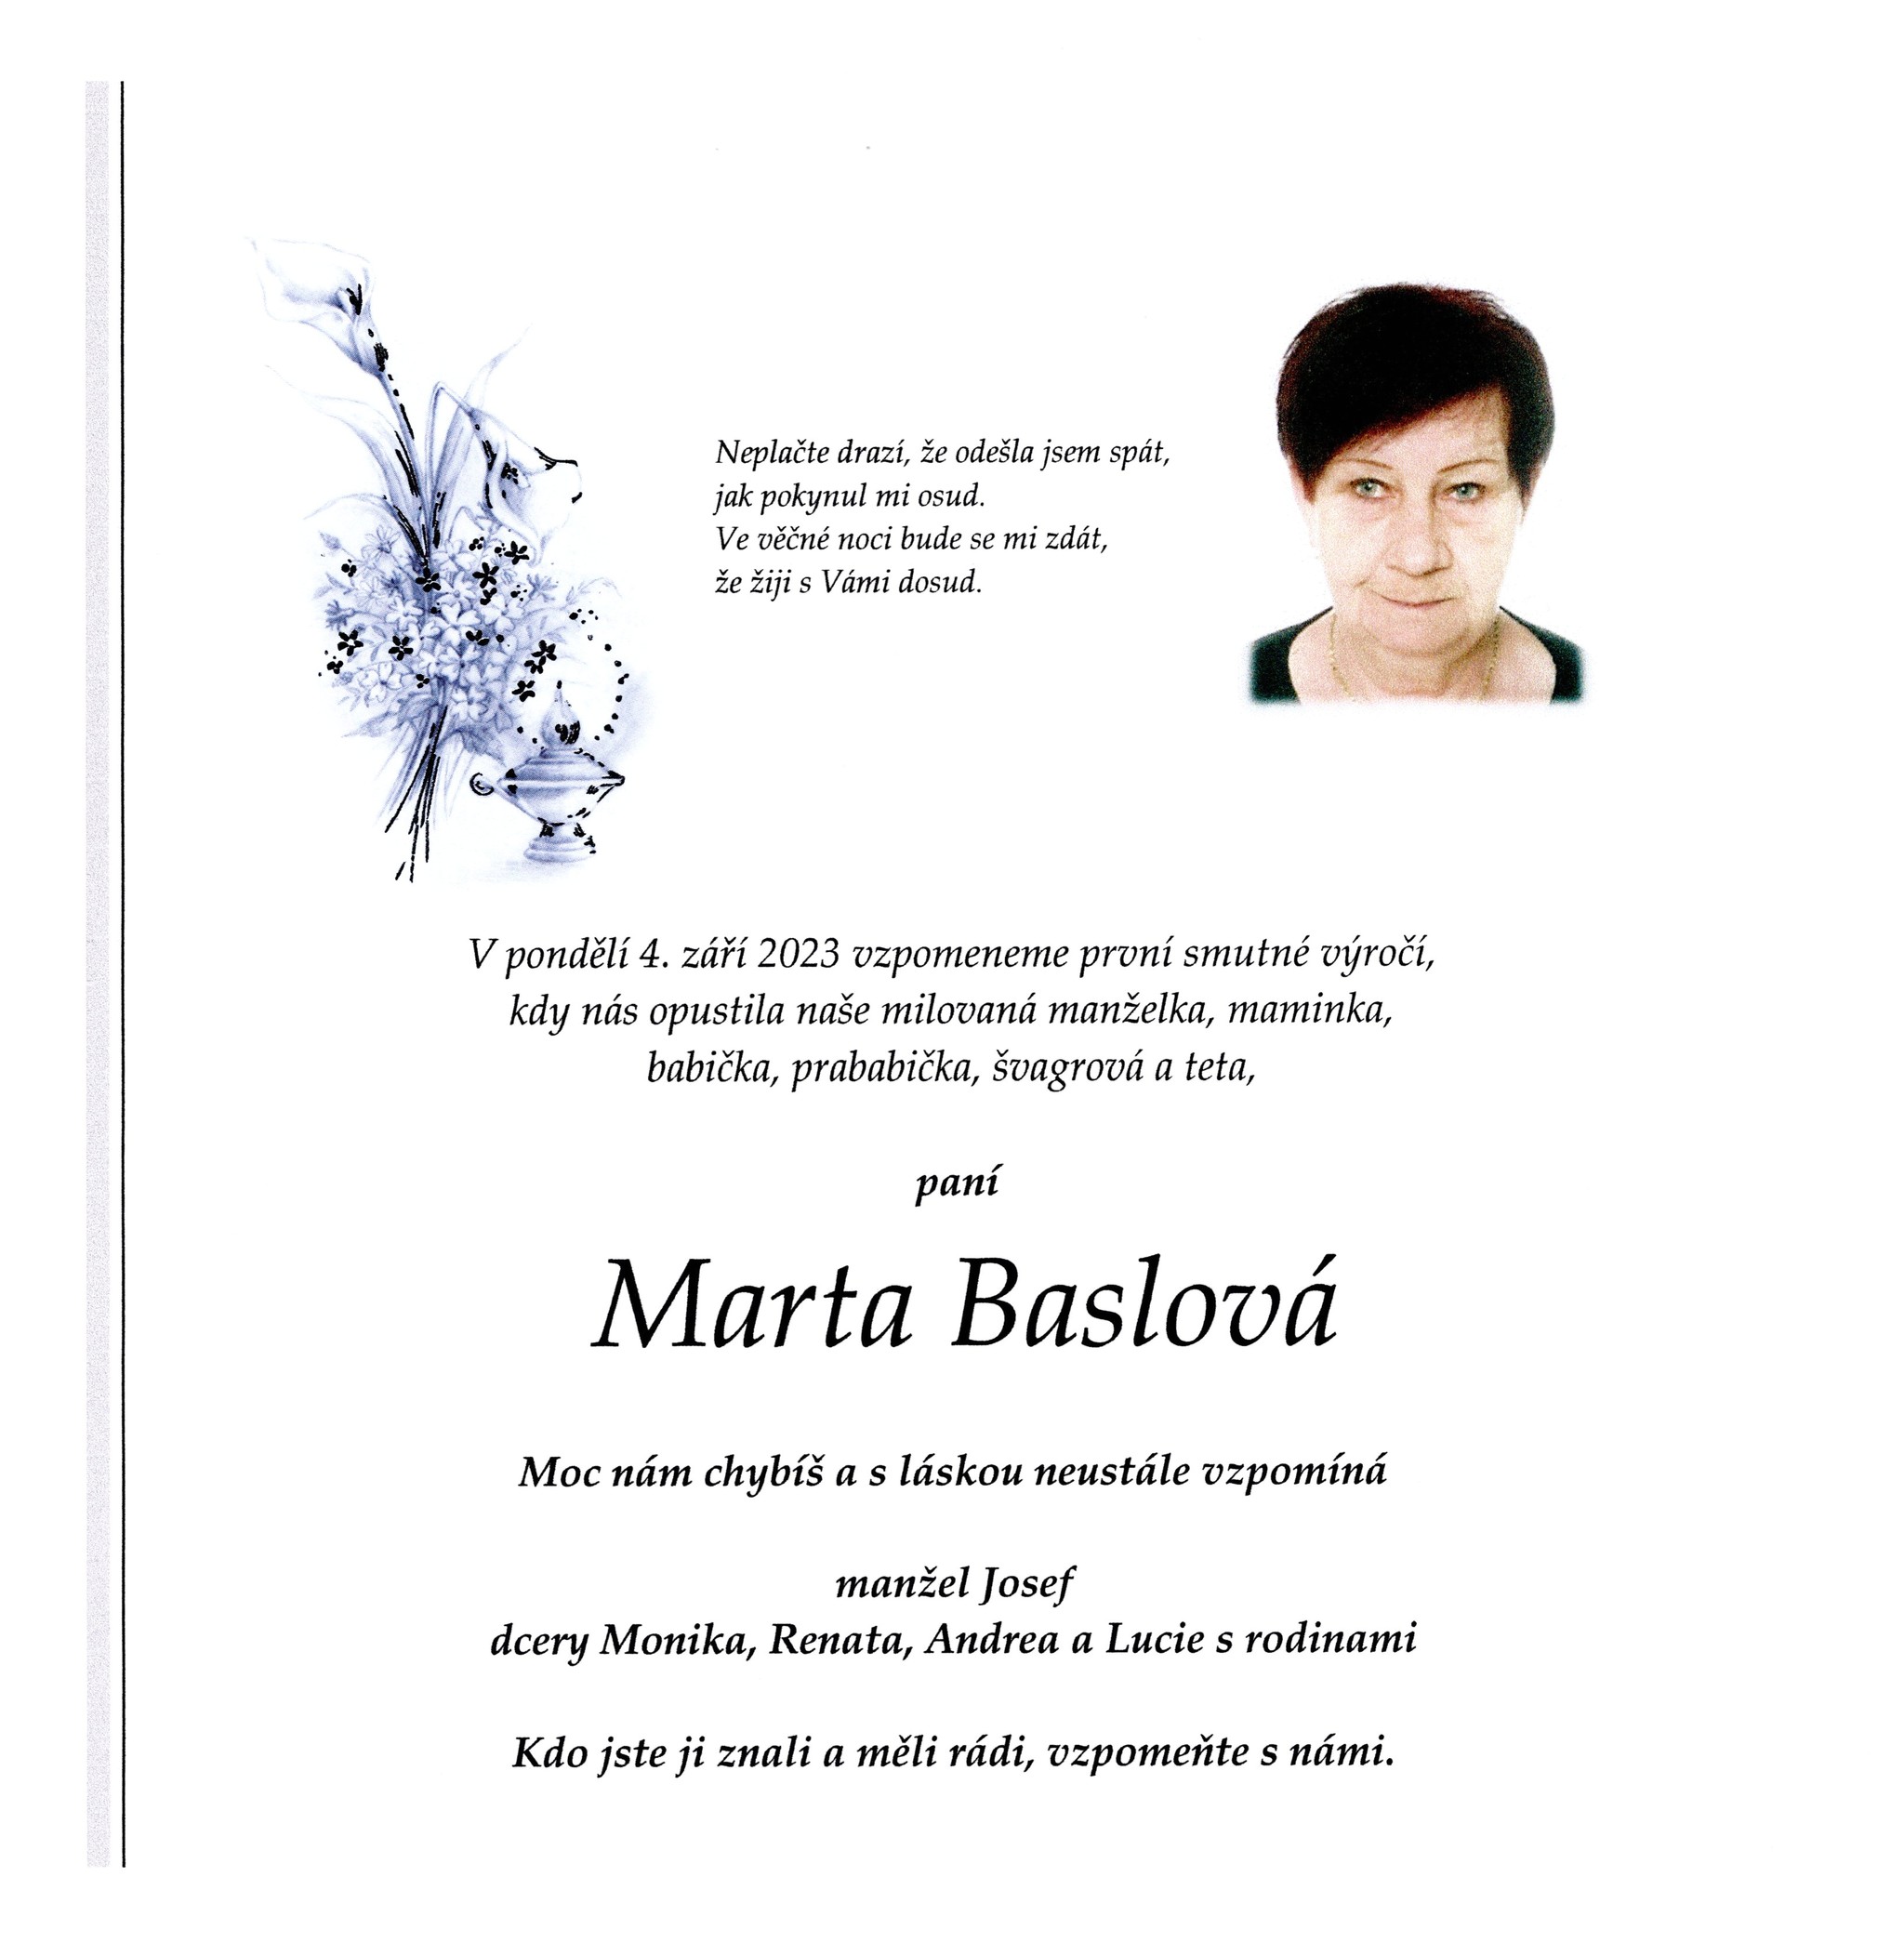 Marta Baslová